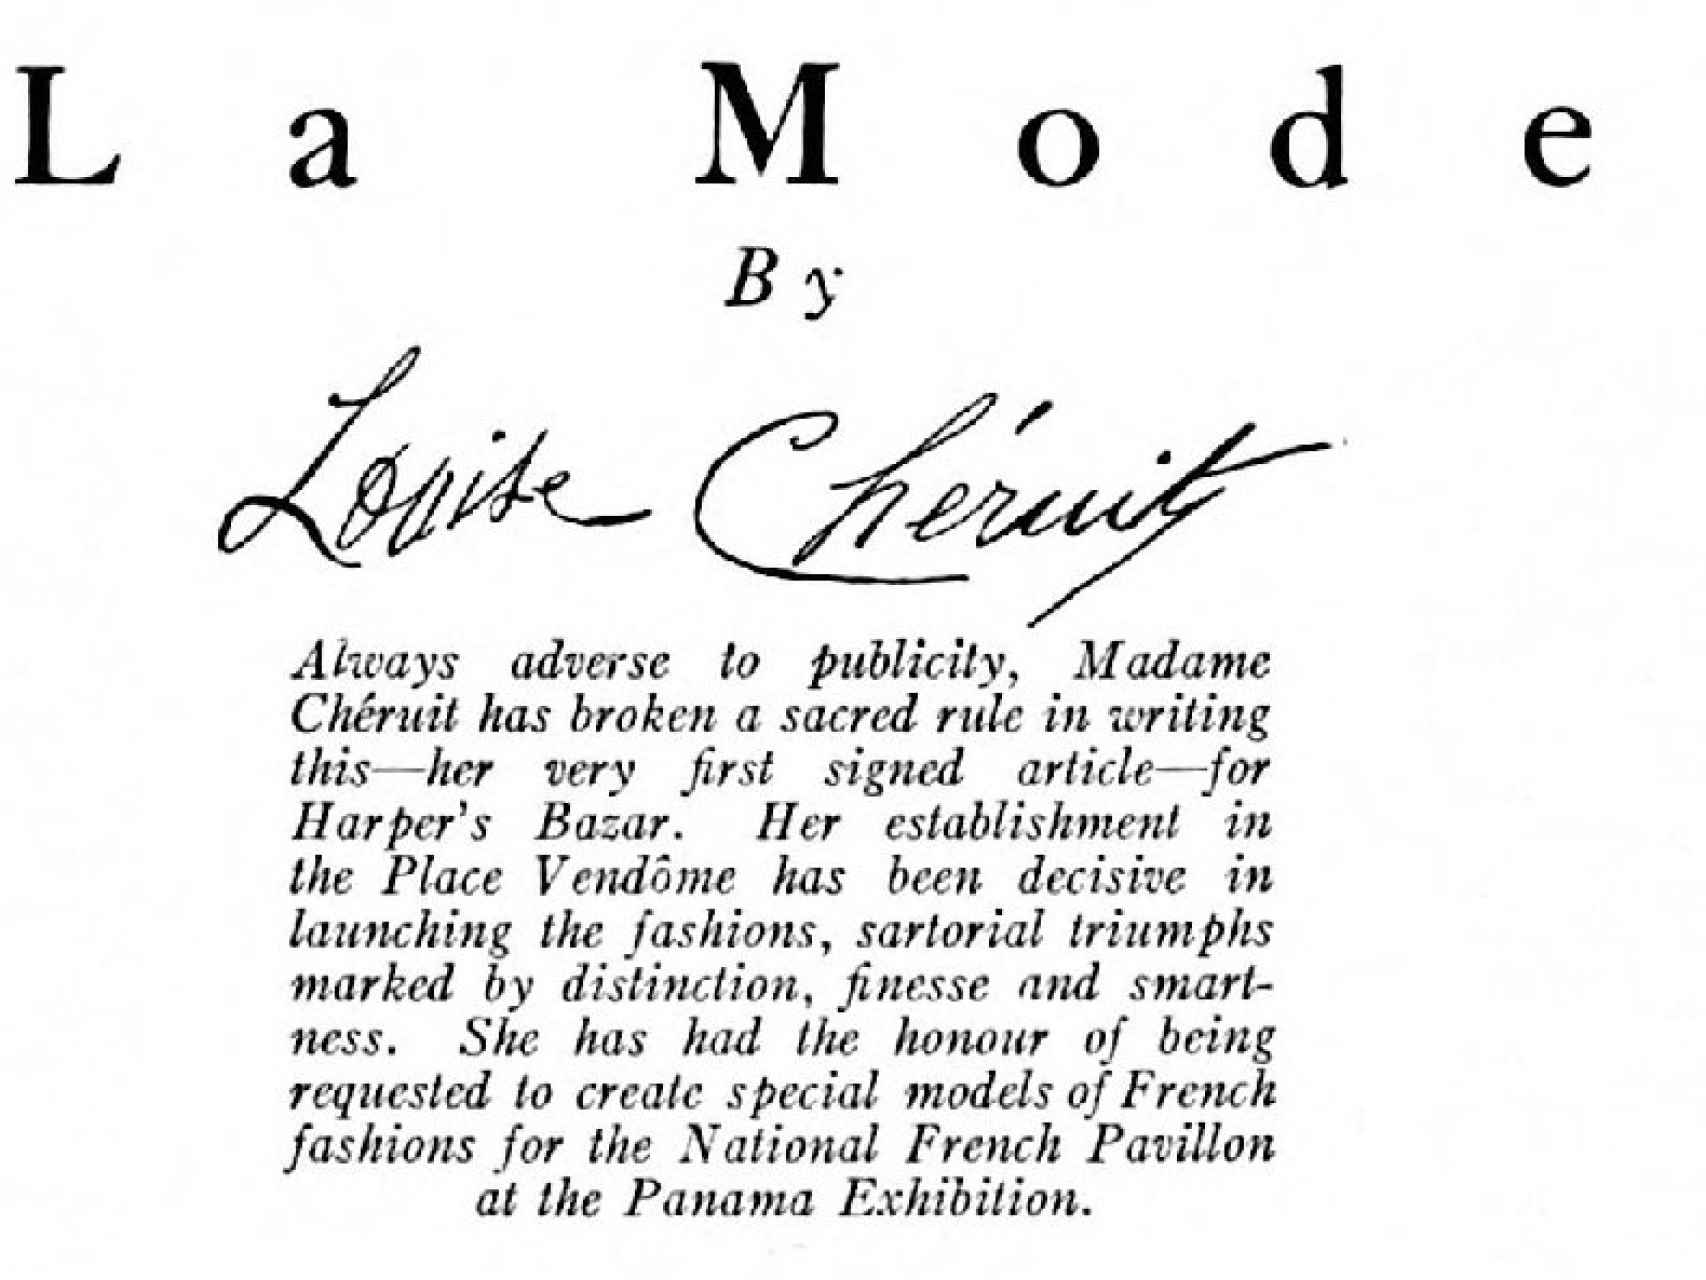 Artículo firmado por Louise Chéruit y publicado, en 1915, en la revista Harper's Bazar.